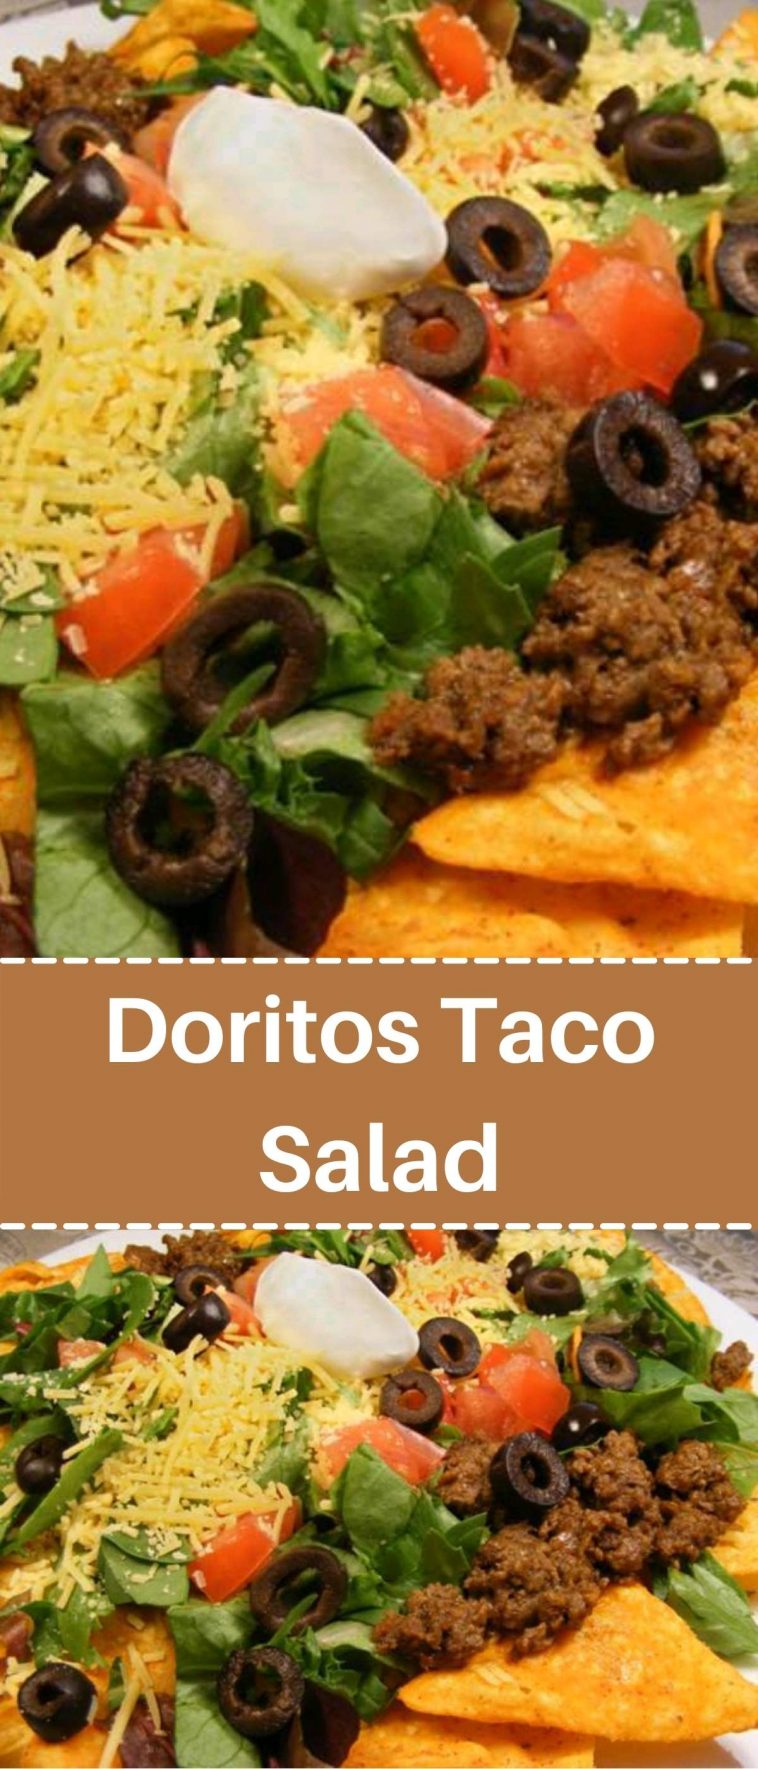 Doritos Taco Salad